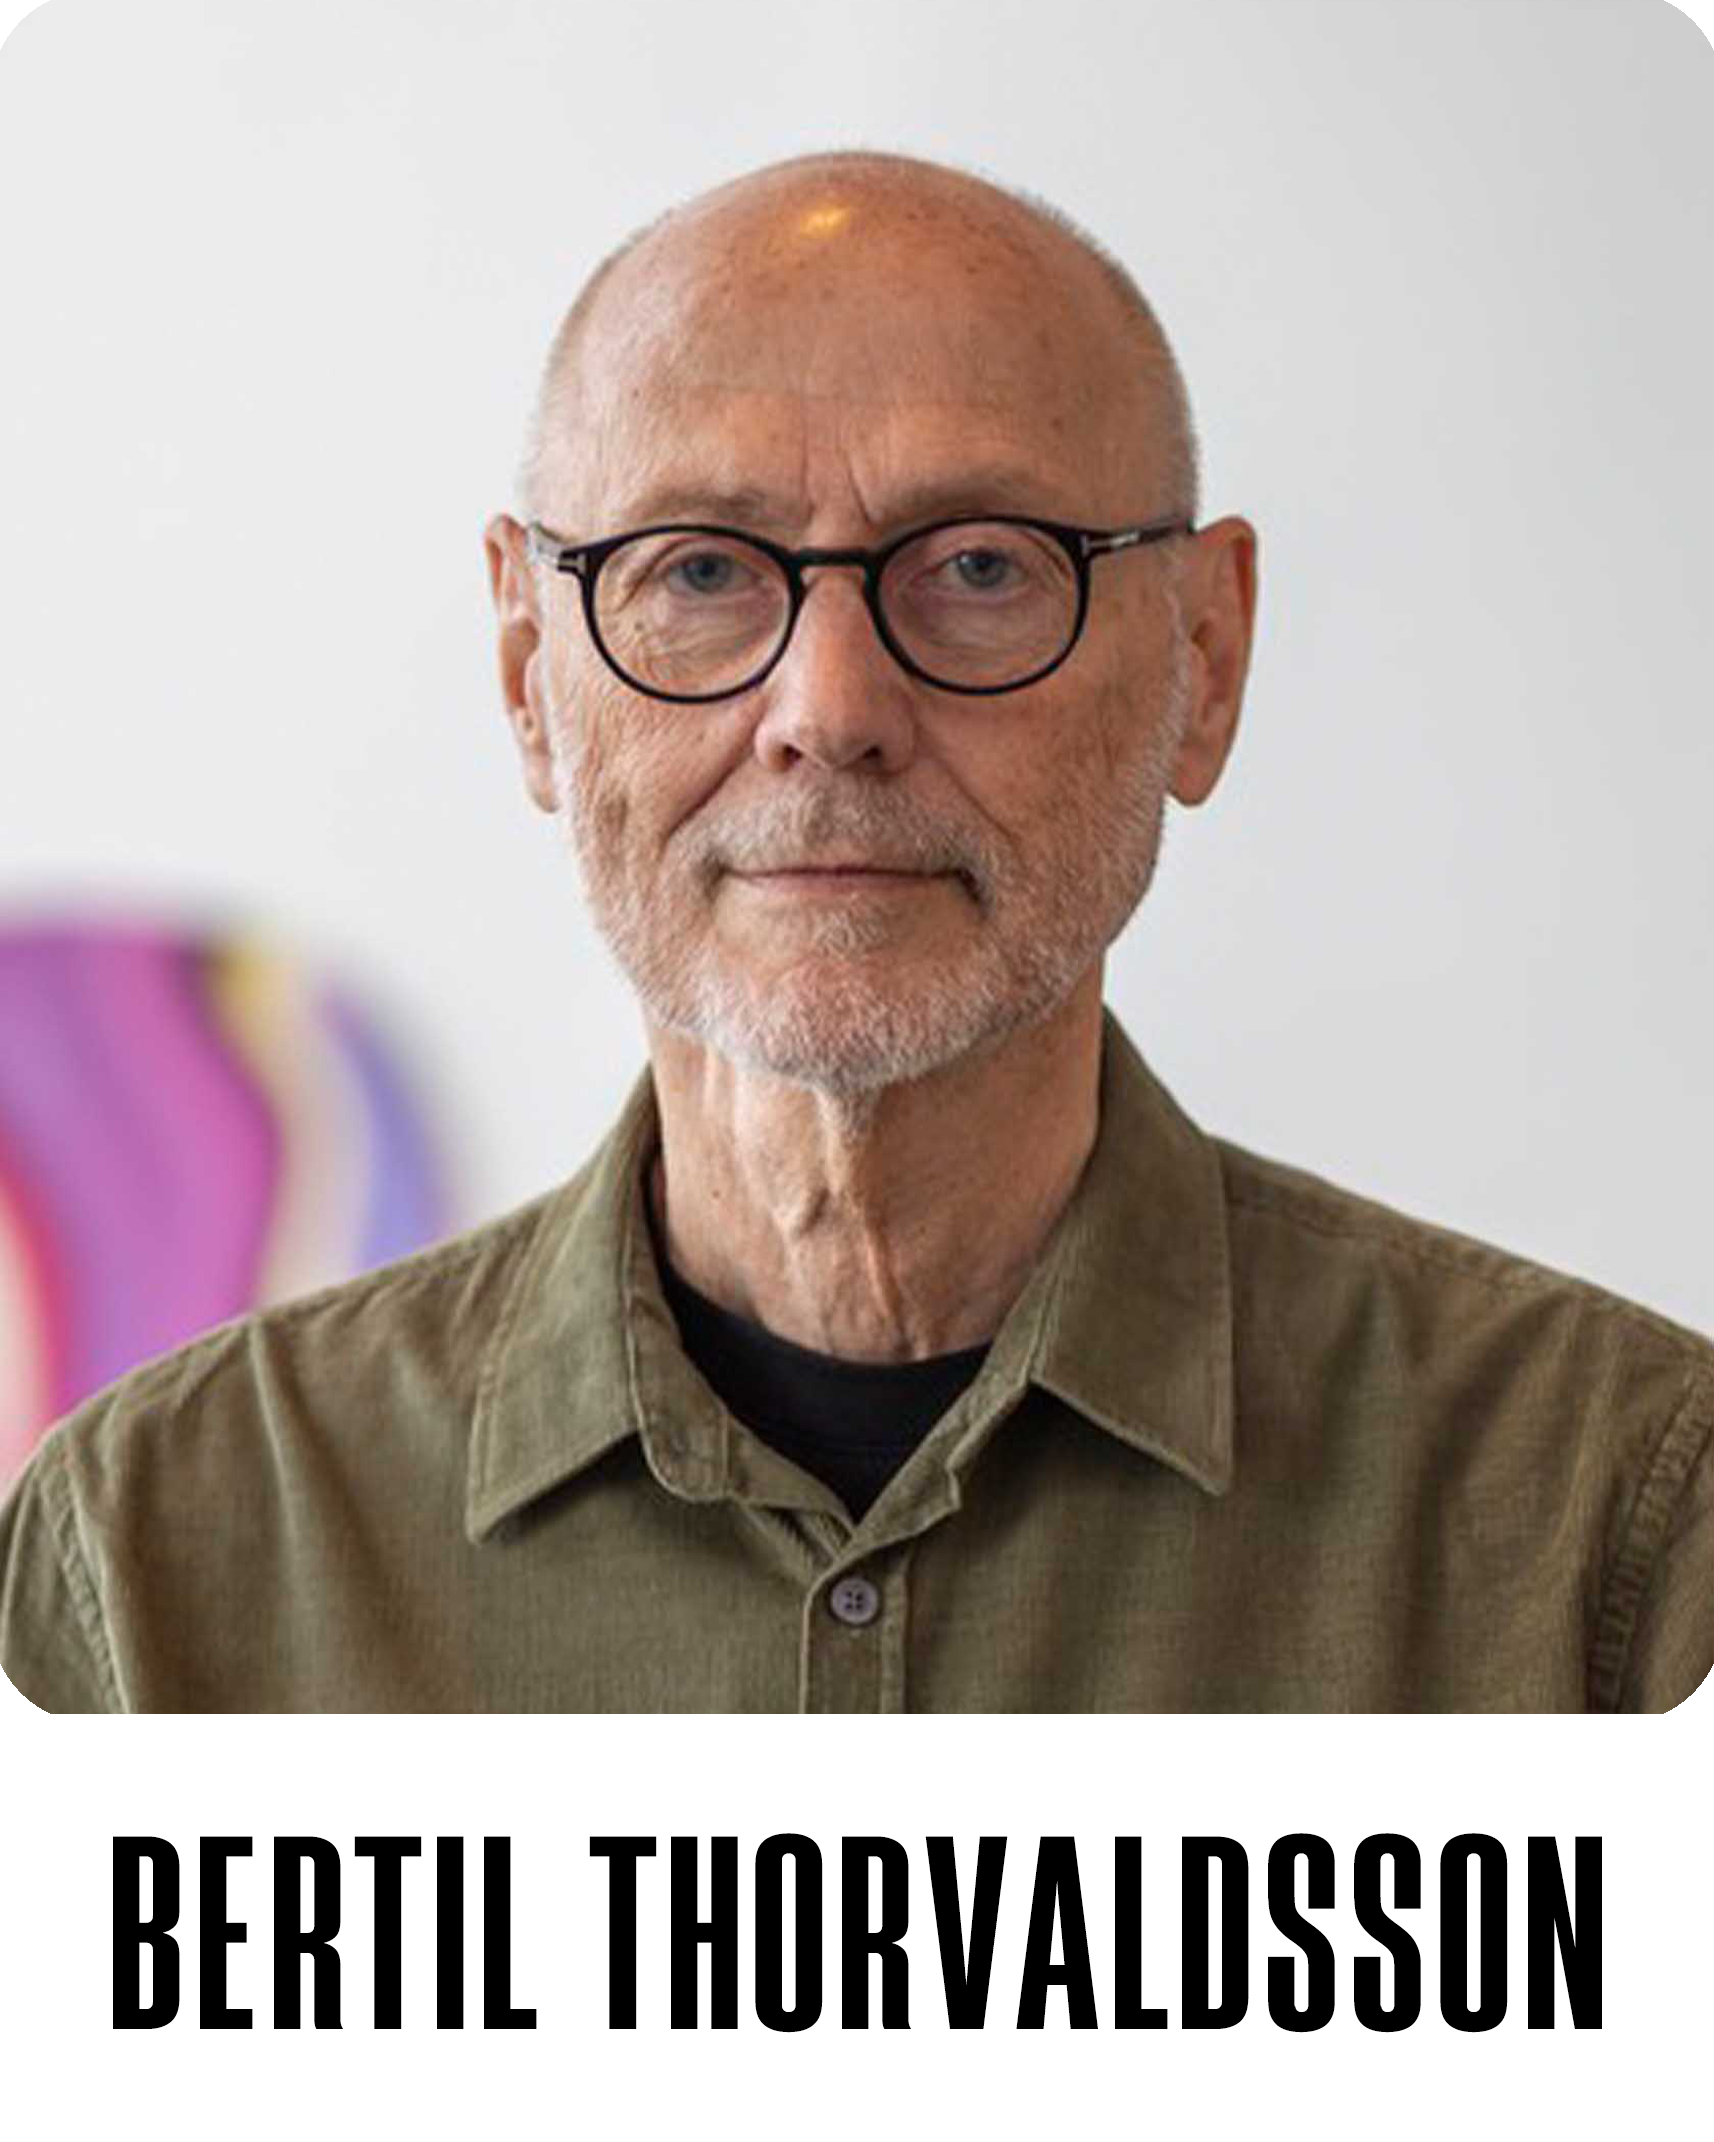 Bertil Thorvaldsson